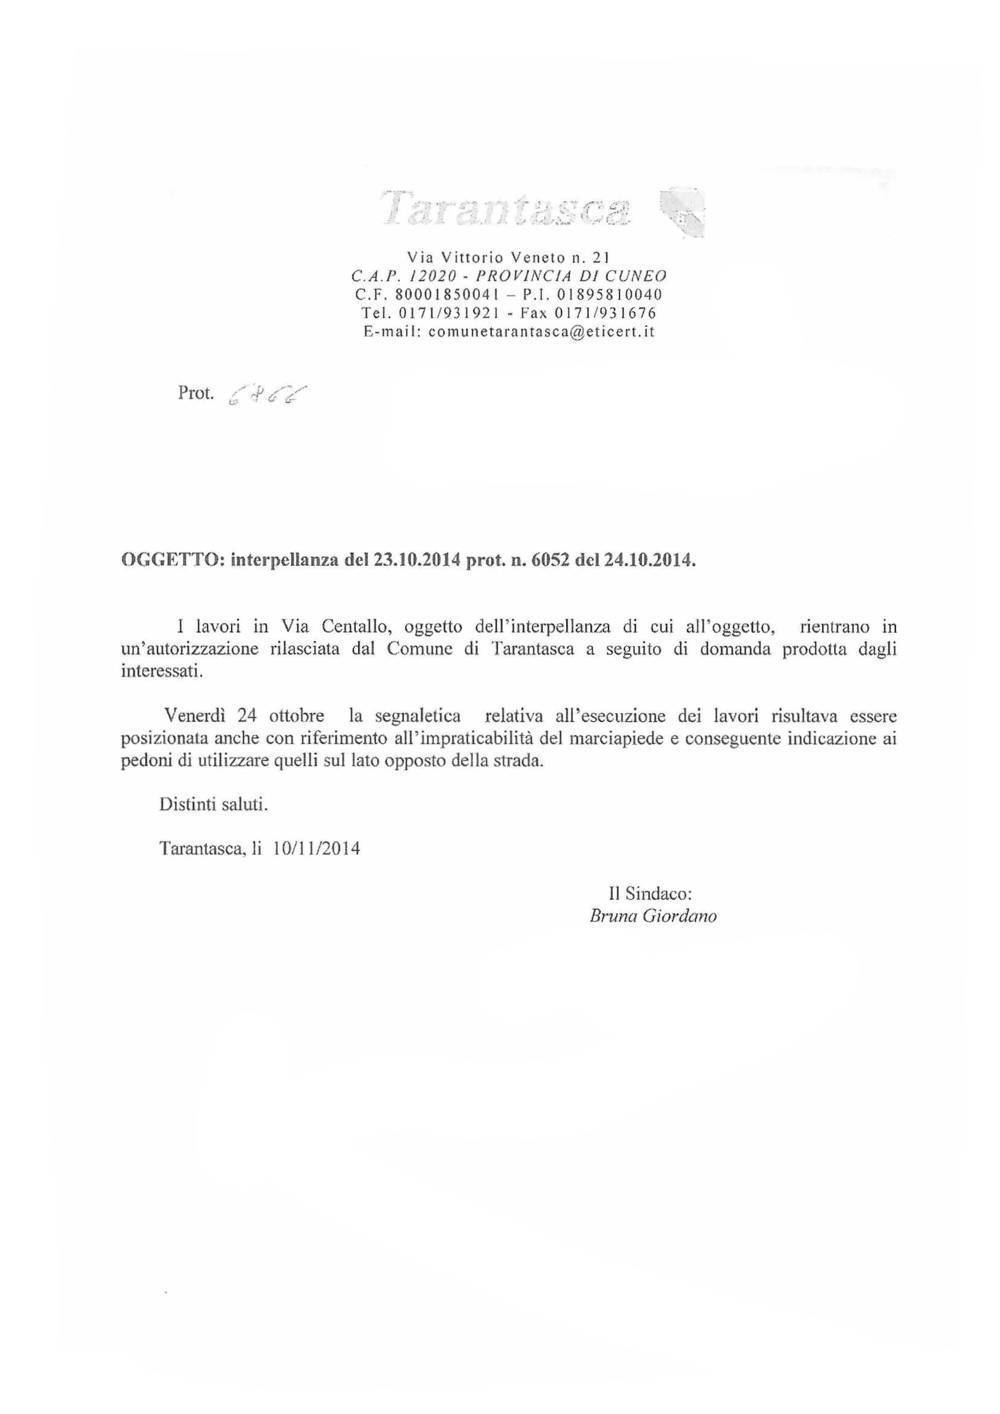 01 Dicembre 2014: Risposta a interpellanza lavori in Via Centallo